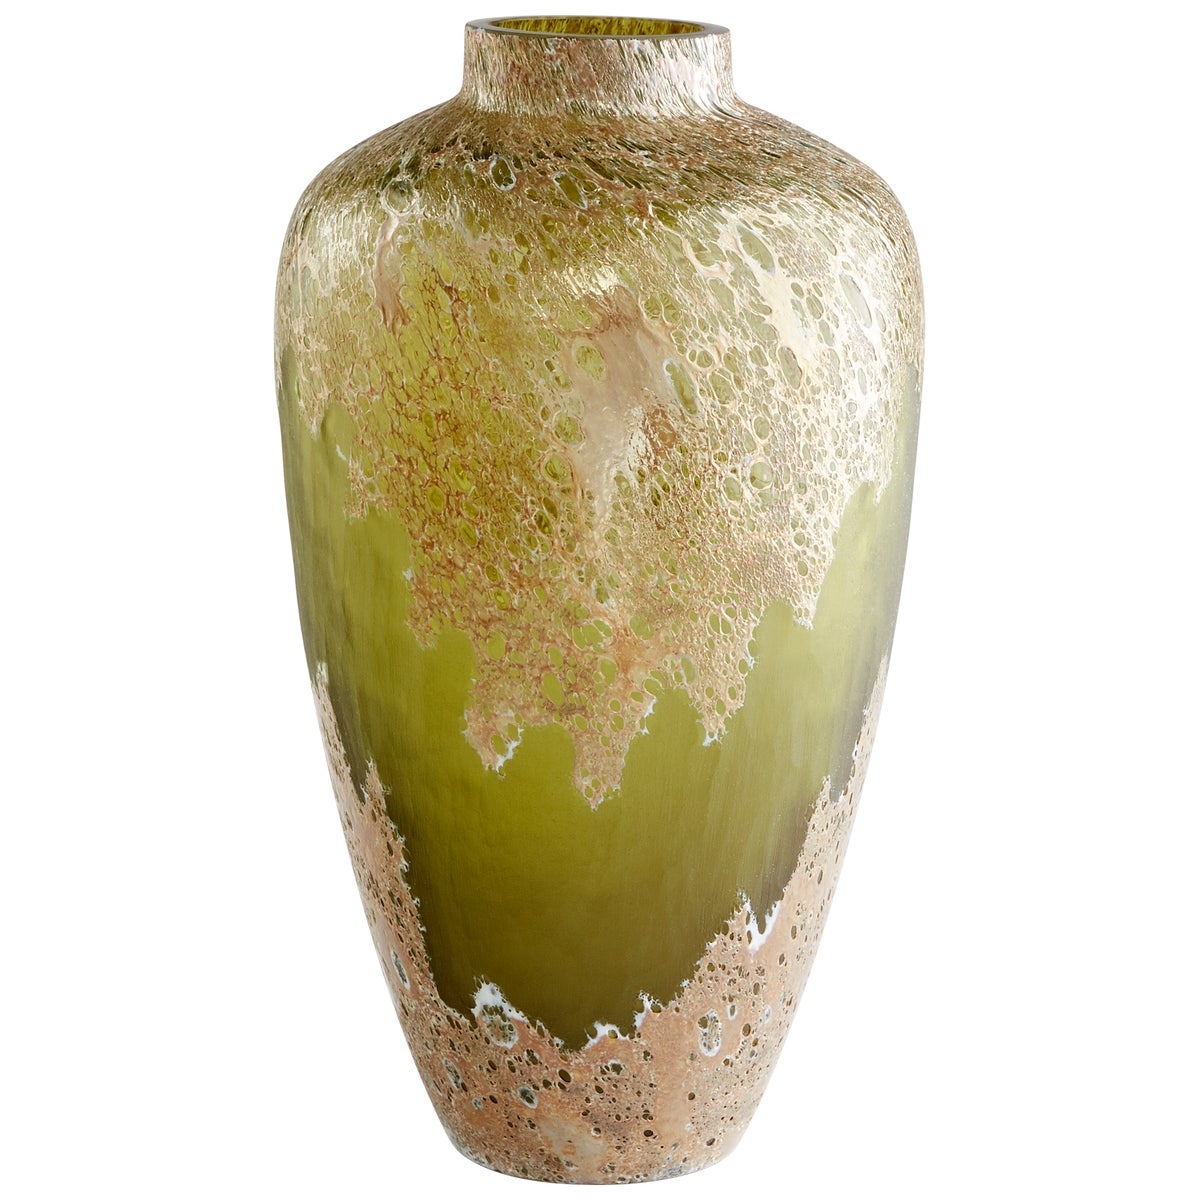 Alkali Vase-Cyan Design-CYAN-10845-Vases-1-France and Son